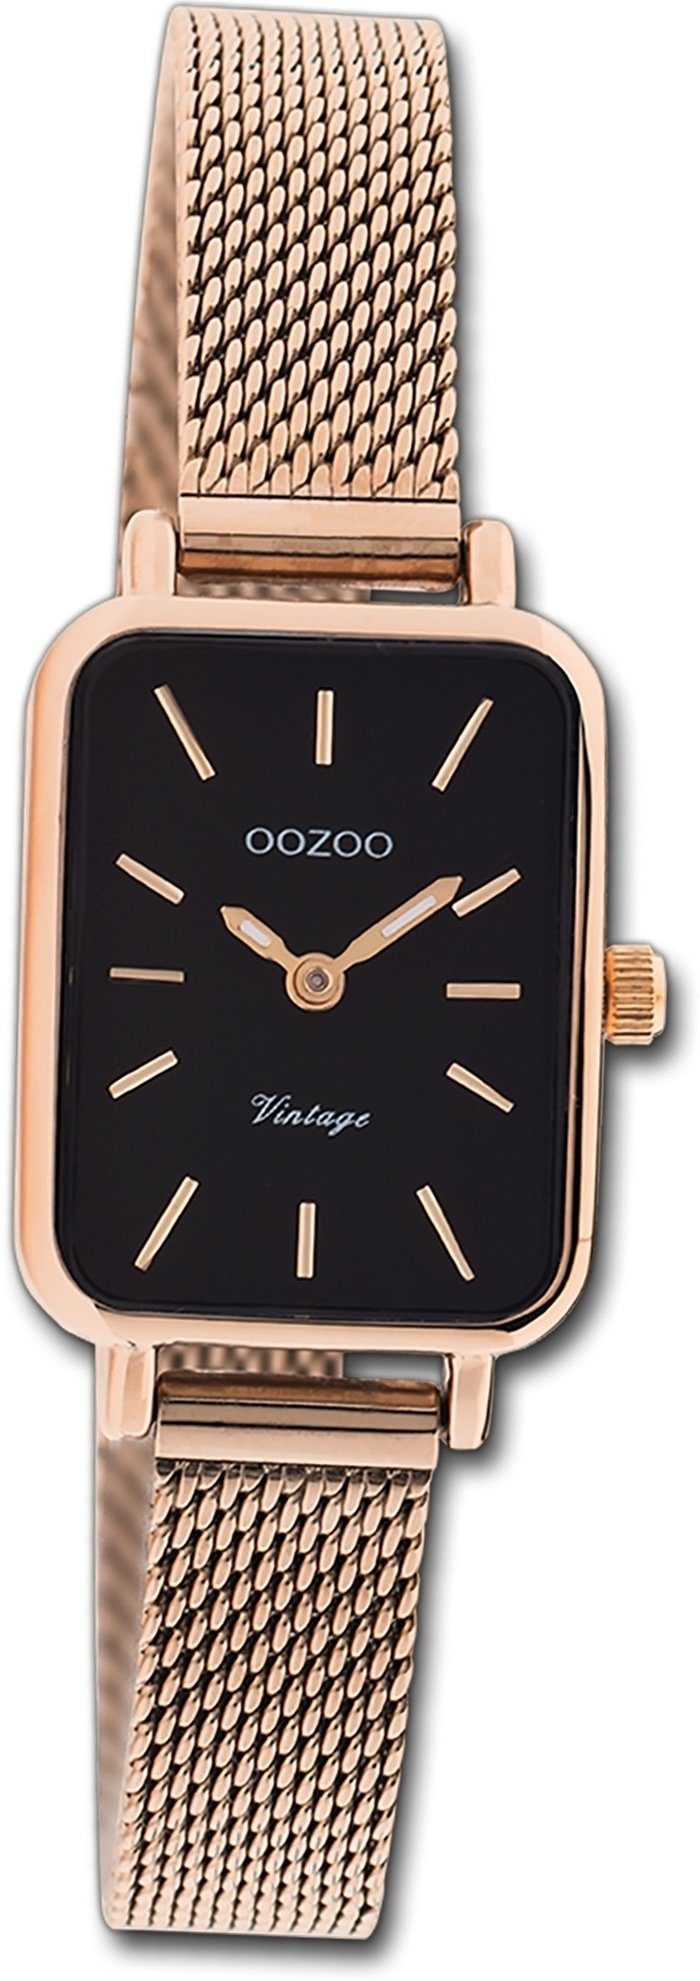 rosegold, Quarzuhr Oozoo Series, rechteckiges Damen klein Armbanduhr Damenuhr (ca. OOZOO Gehäuse, Vintage 21x26mm)